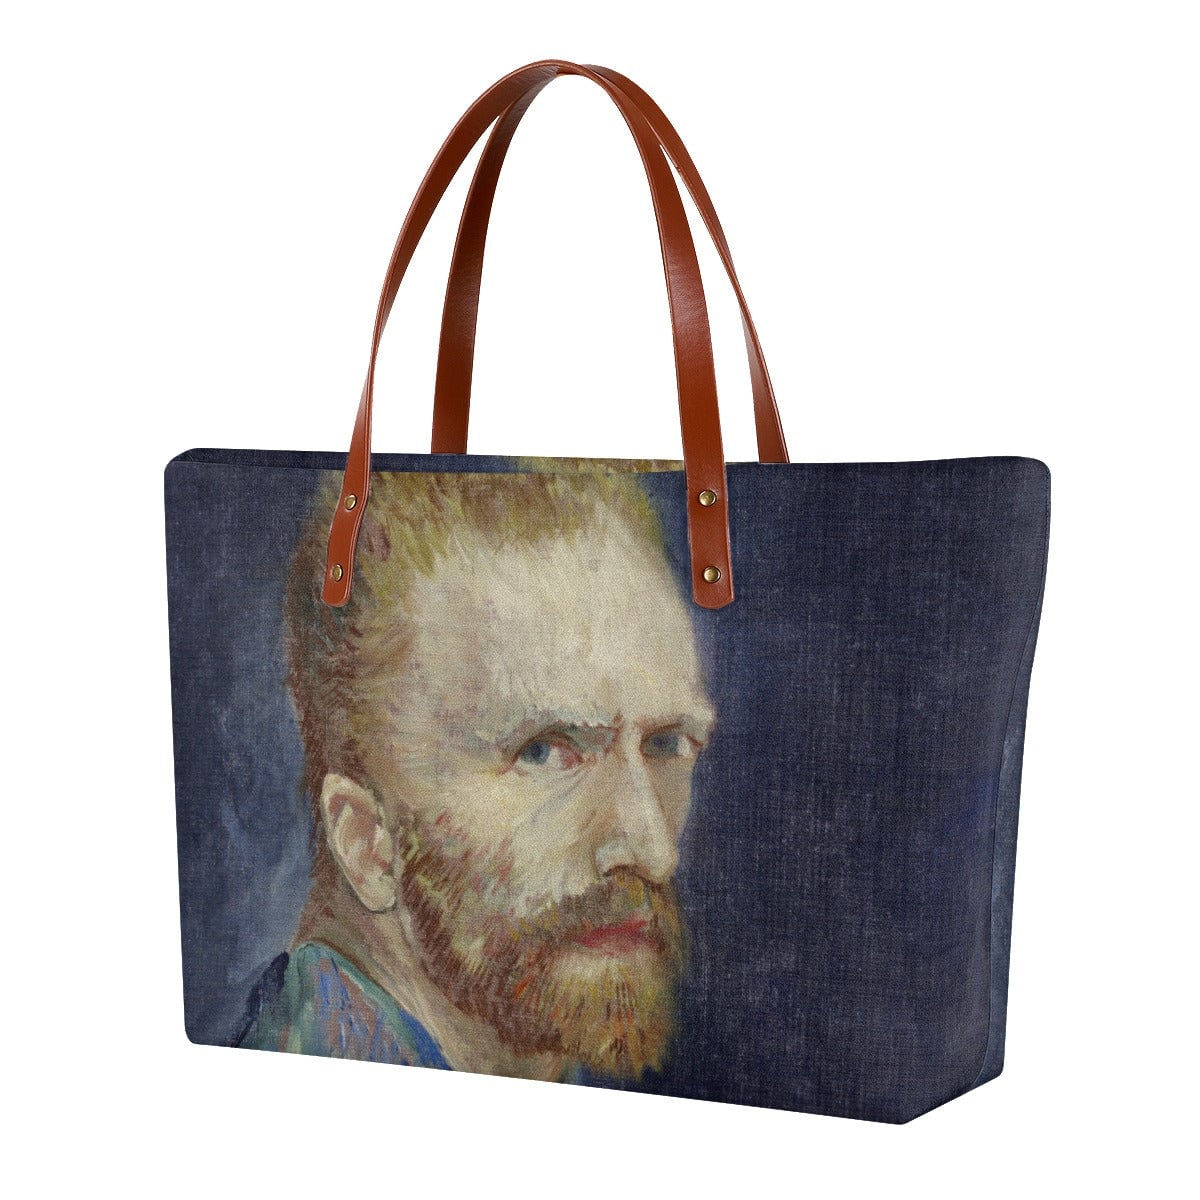 Vincent van Gogh’s 1887 Self-Portrait Tote Bag